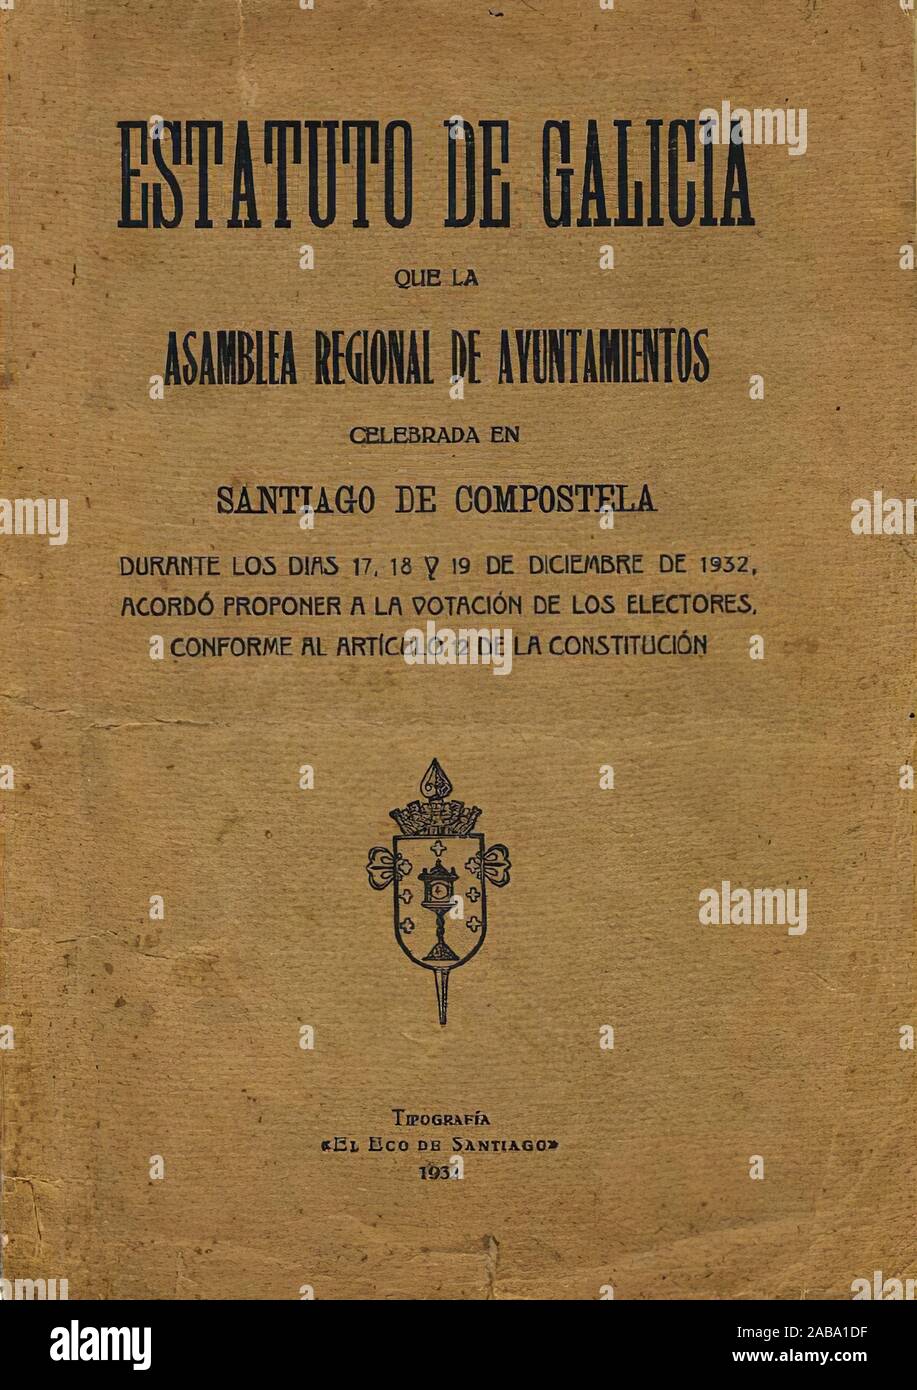 Portada del Estatuto de Galicia de 1936, según el proyecto aprobado por una asamblea de municipios gallegos en diciembre de 1932, Stock Photo